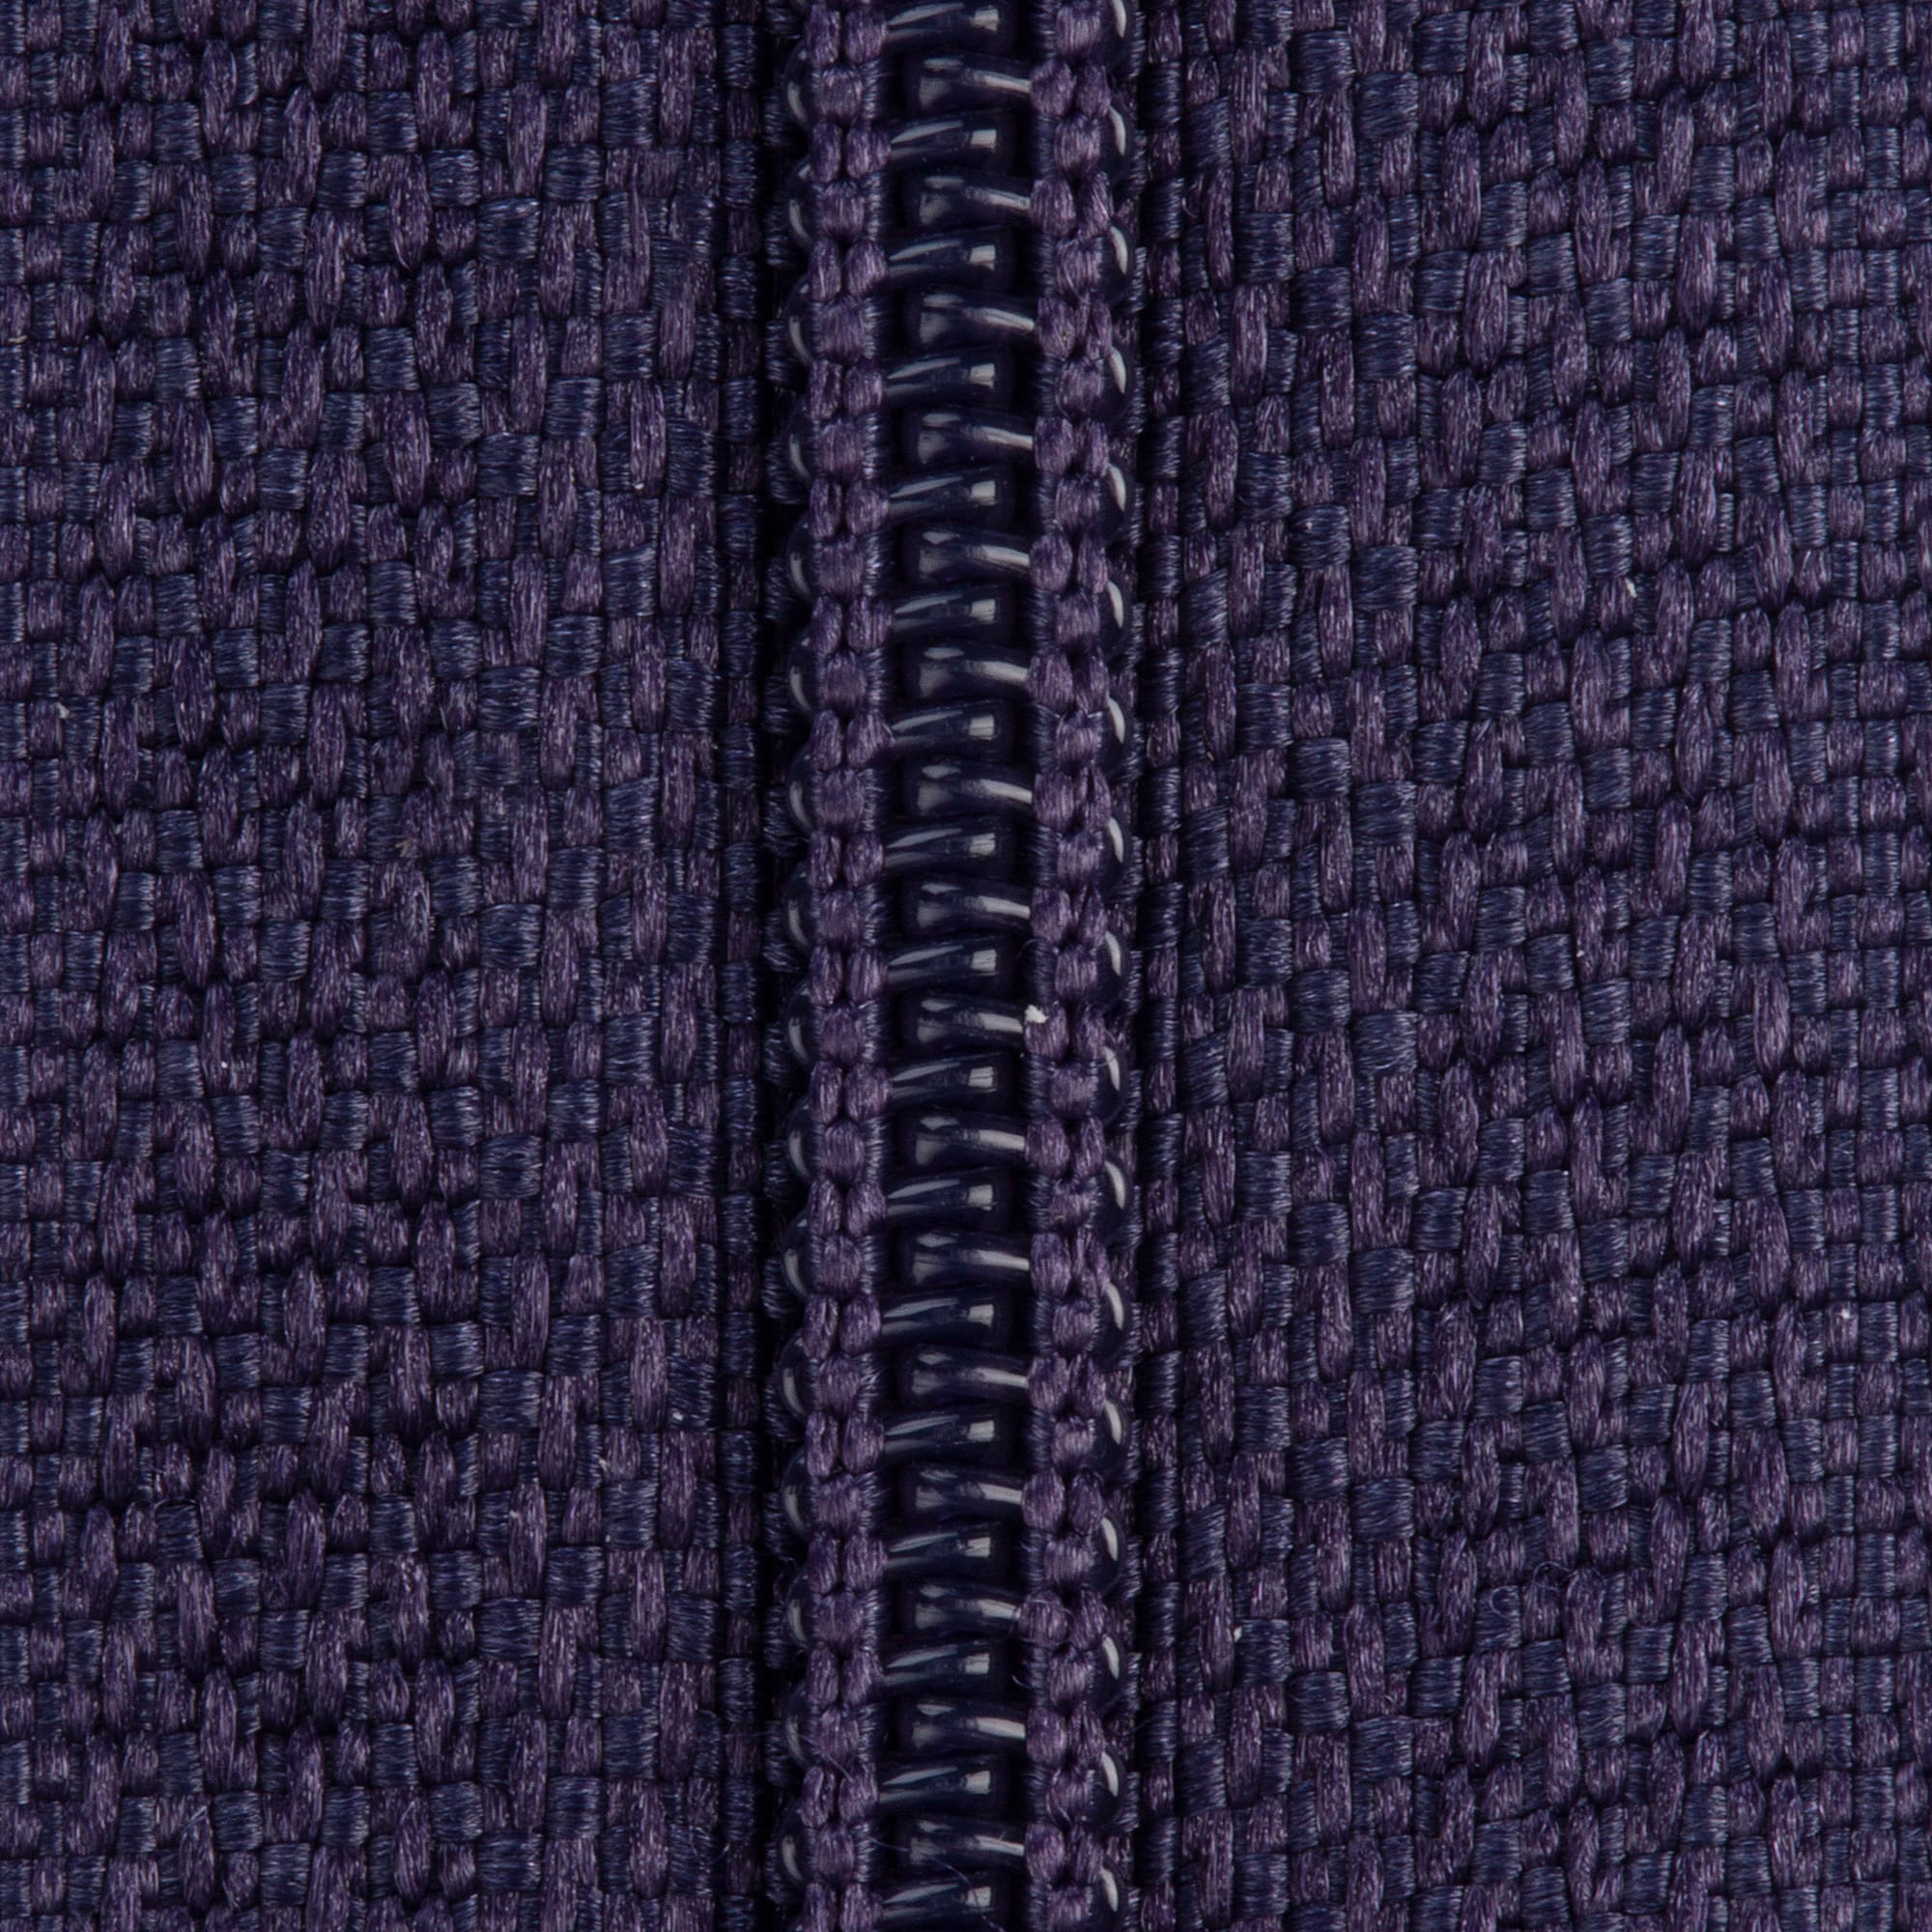 Coats &#x26; Clark&#x2122; 14&#x22; Polyester All Purpose Zipper